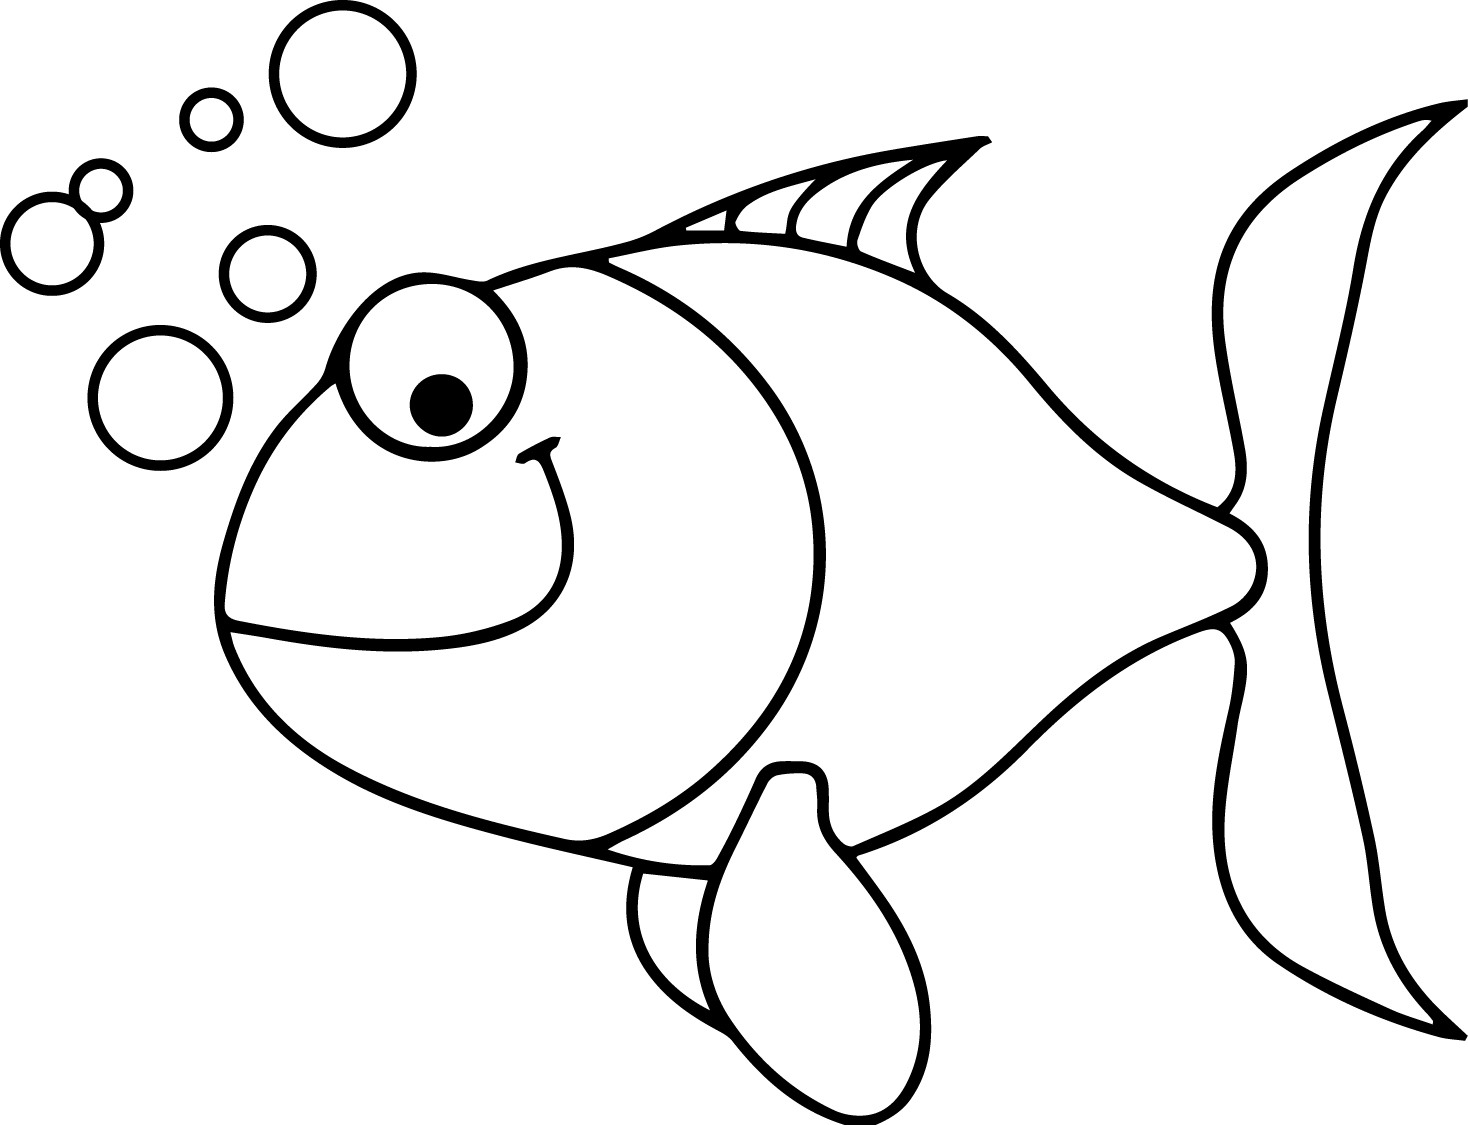 Раскраска рыбка. Трафарет "рыбки". Рисунок рыбки для раскрашивания. Трафарет рыбы для рисования. Раскраски рыбки для детей 3 4 лет